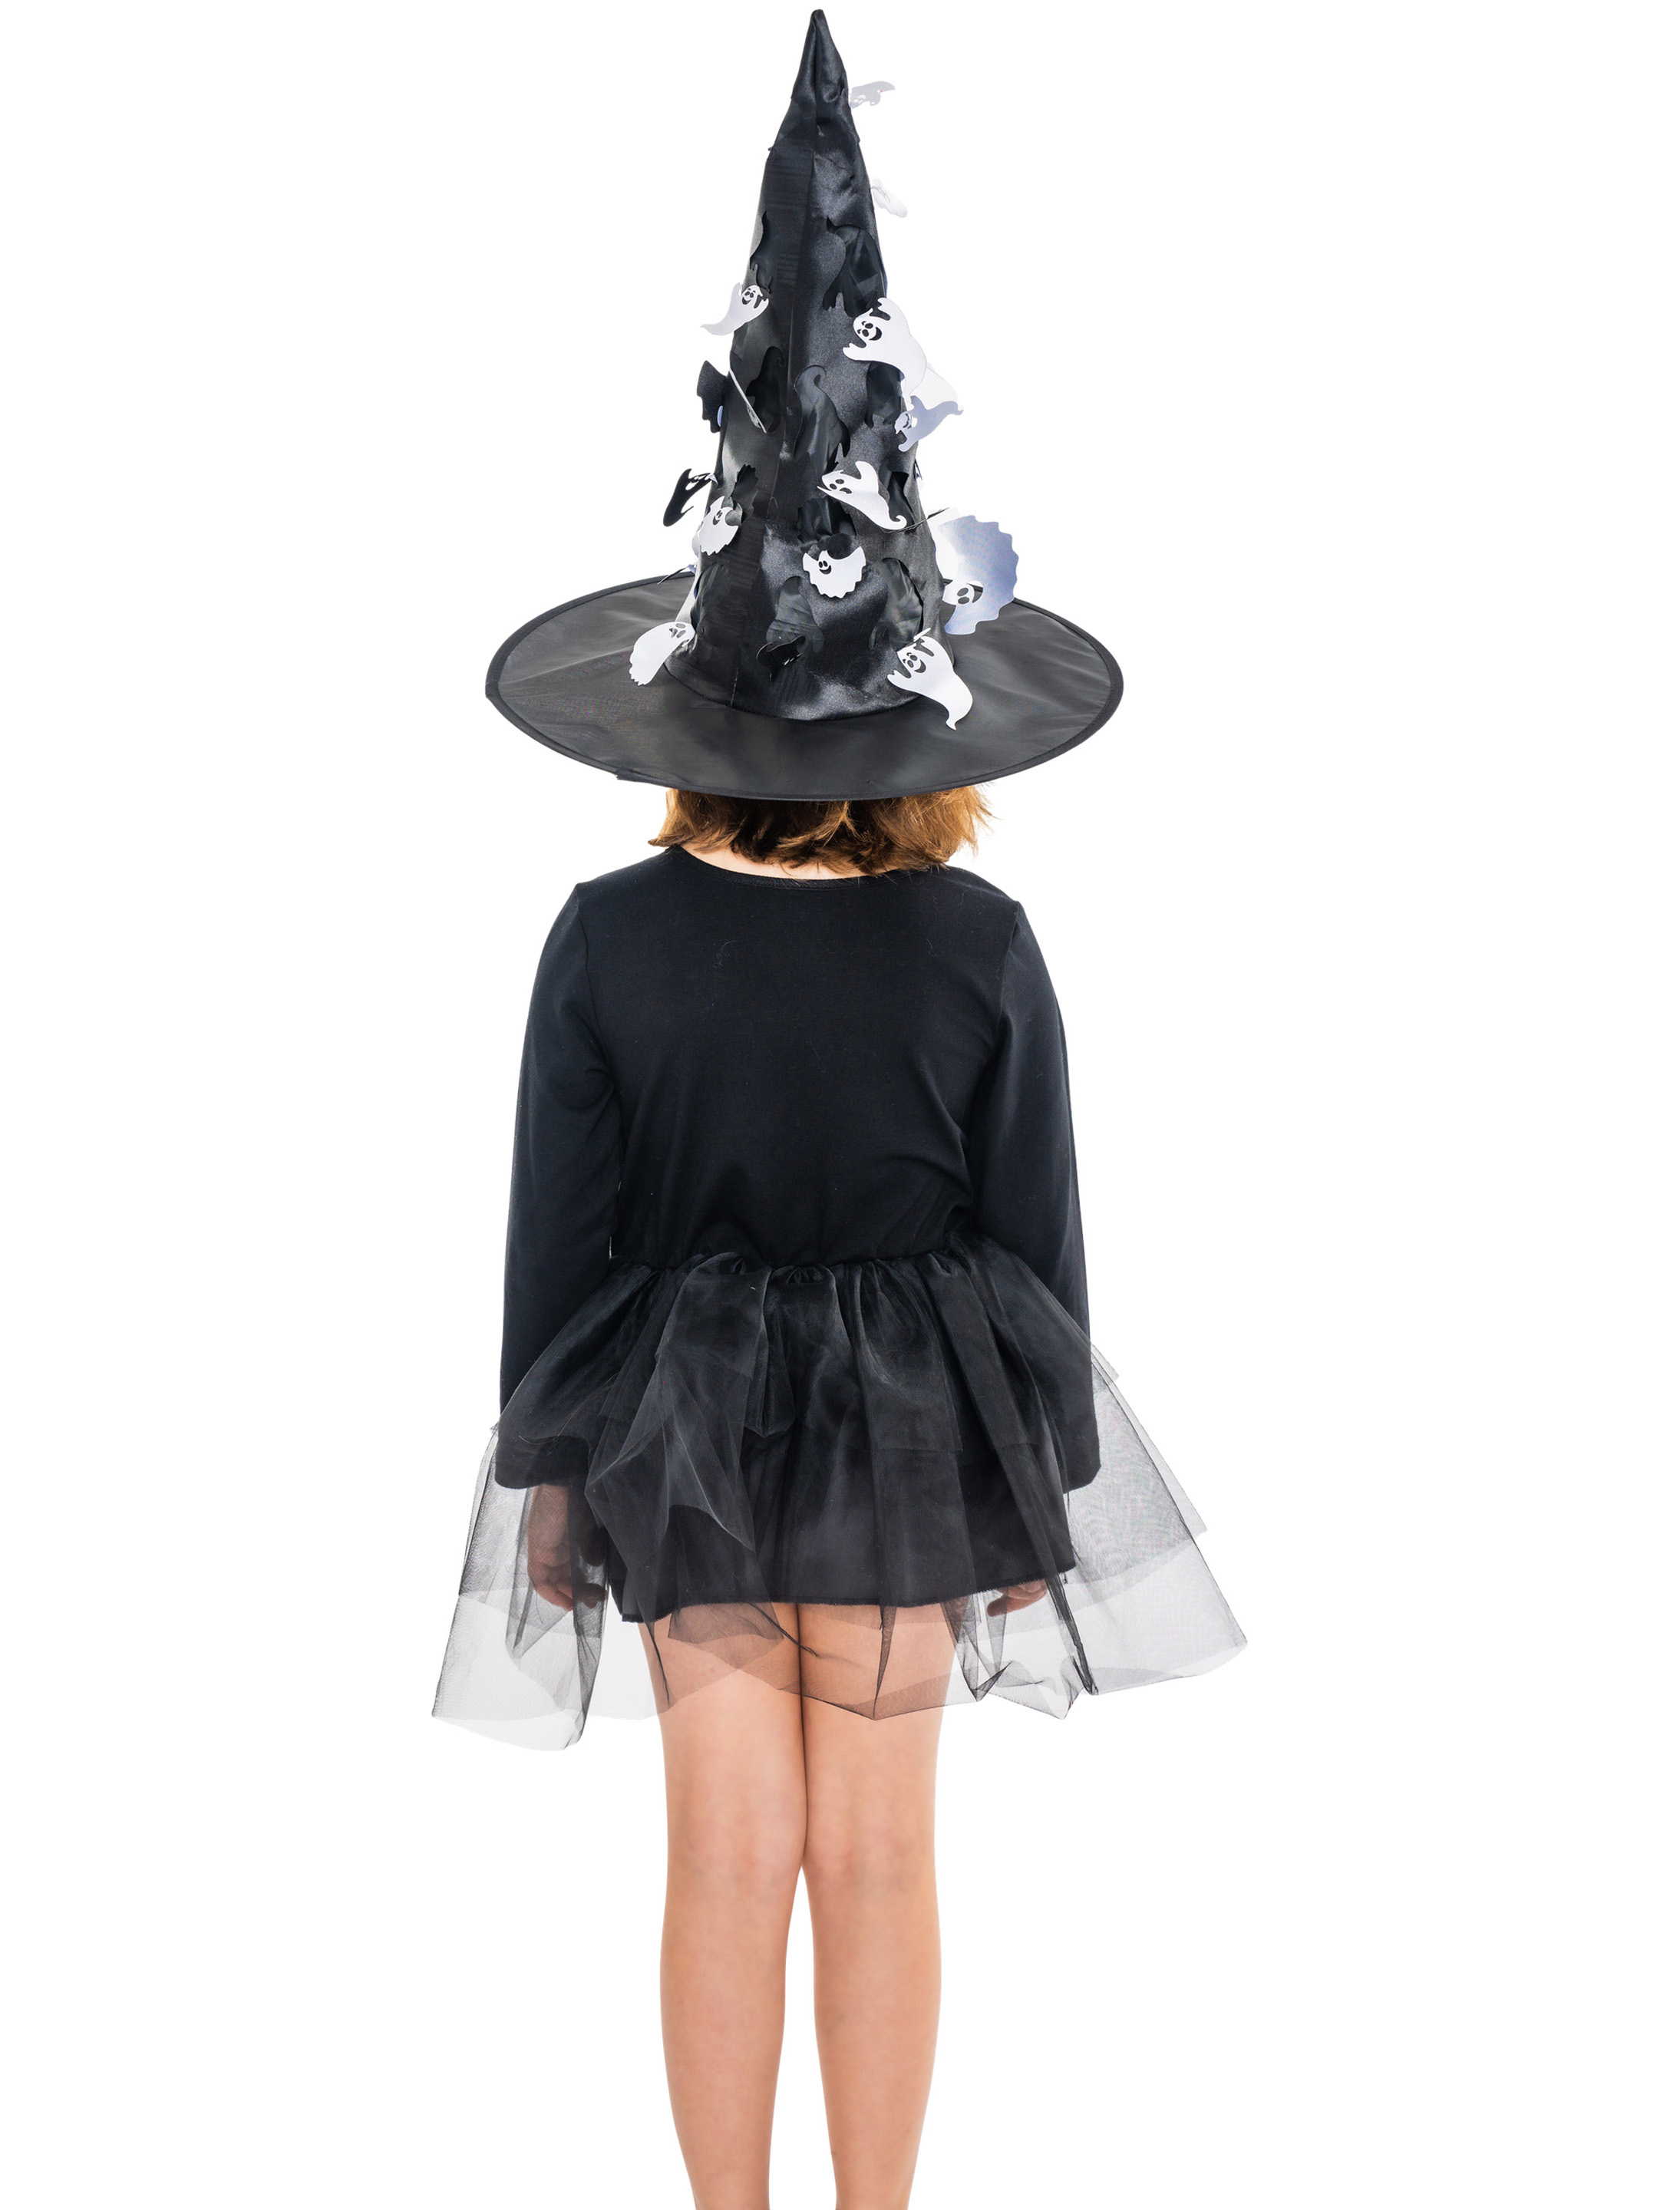 Kleid Hexe Kinder schwarz 116